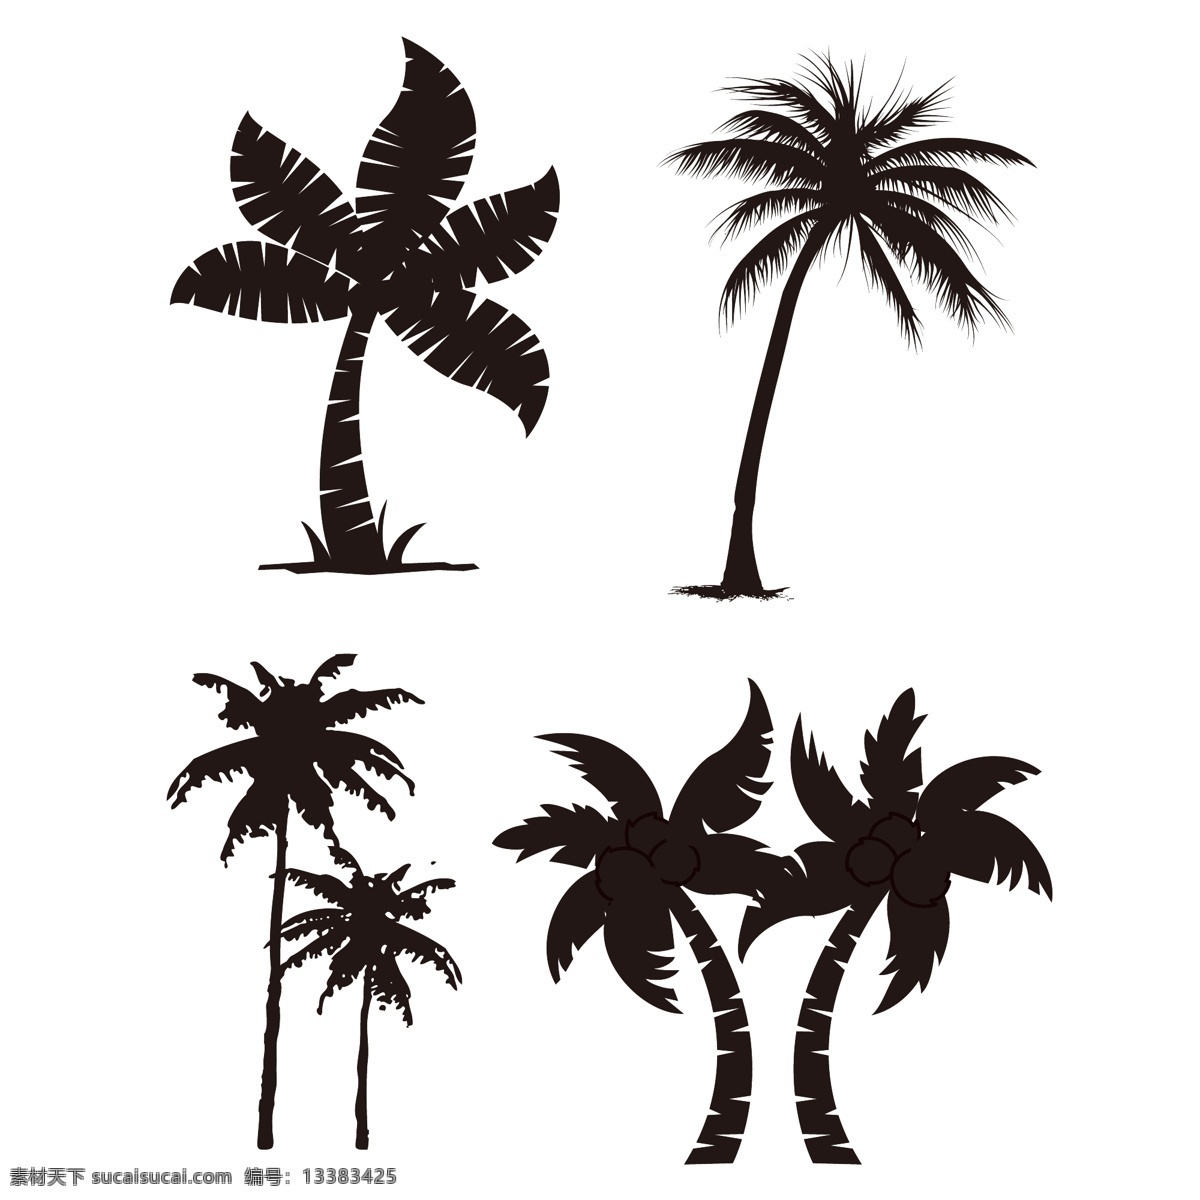 椰子树矢量图 多样椰子树 夏威夷椰子树 椰子树素材 卡通椰树 手绘椰树 椰树 椰树图片 矢量椰树 海边风情 清凉一夏 沙滩素材 椰子树 卡通椰子树 矢量椰子树 共享分素材 生物世界 树木树叶